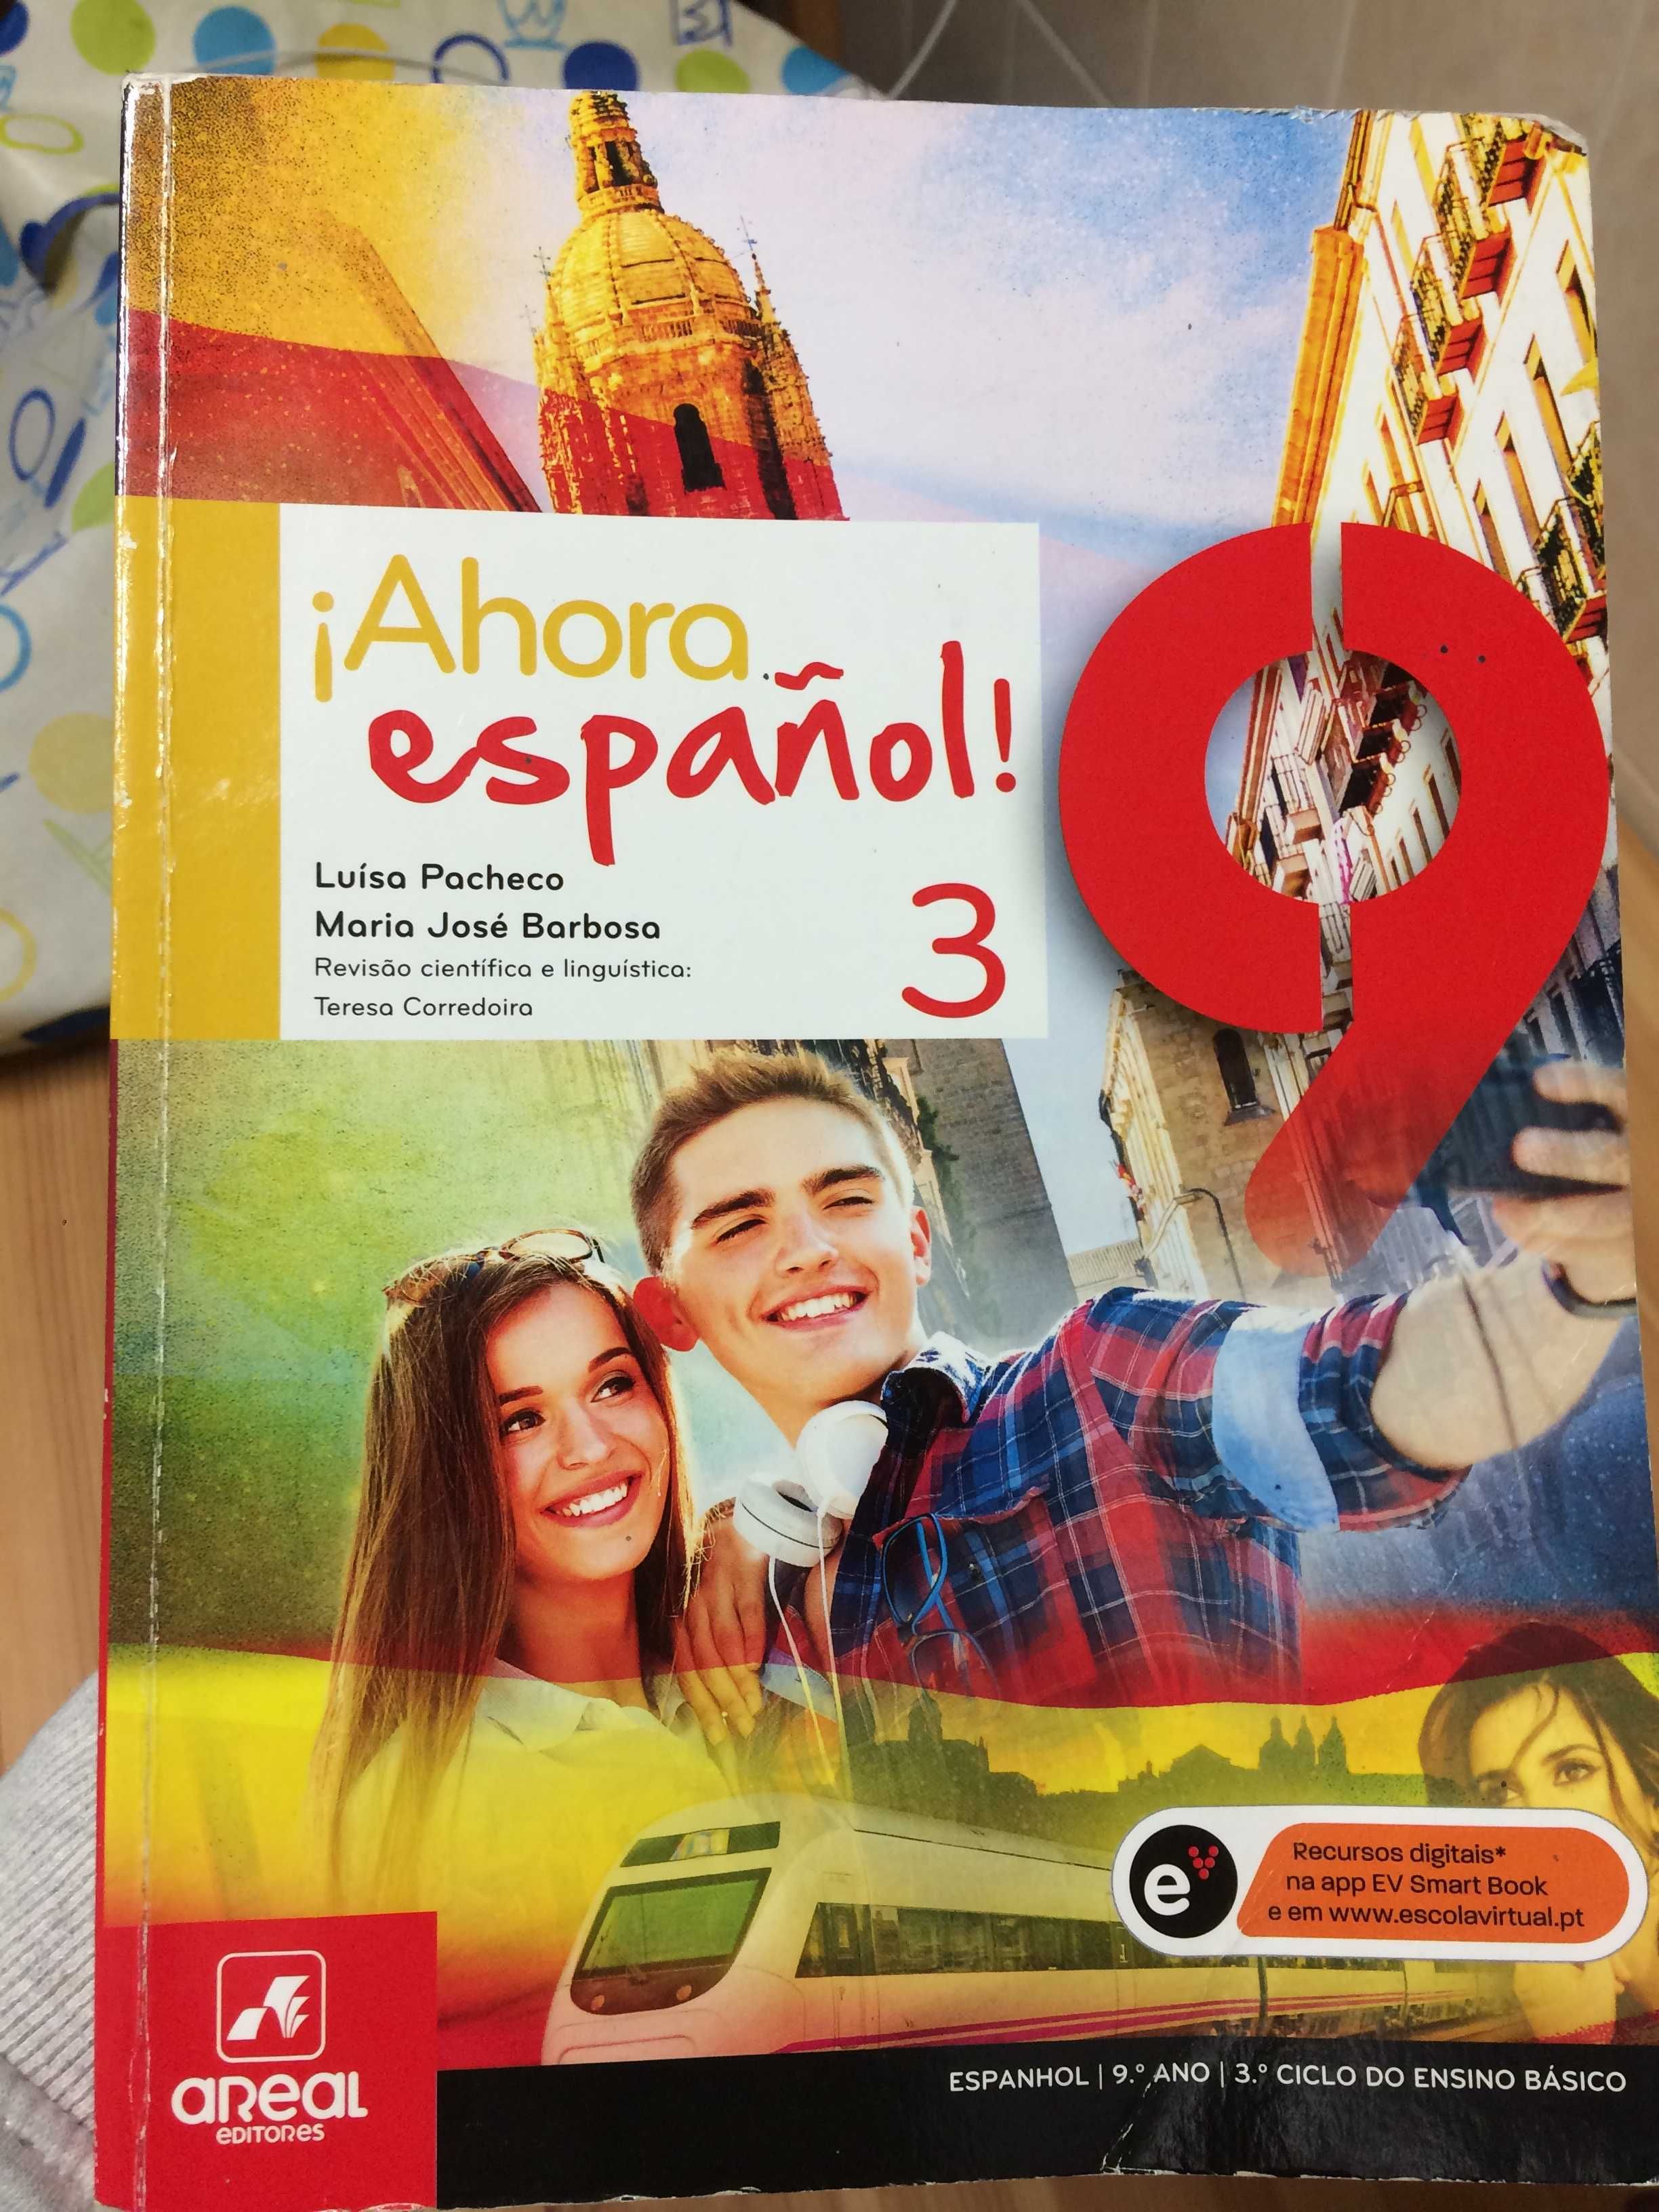 Ahora español! 3 - 9º ano - livro